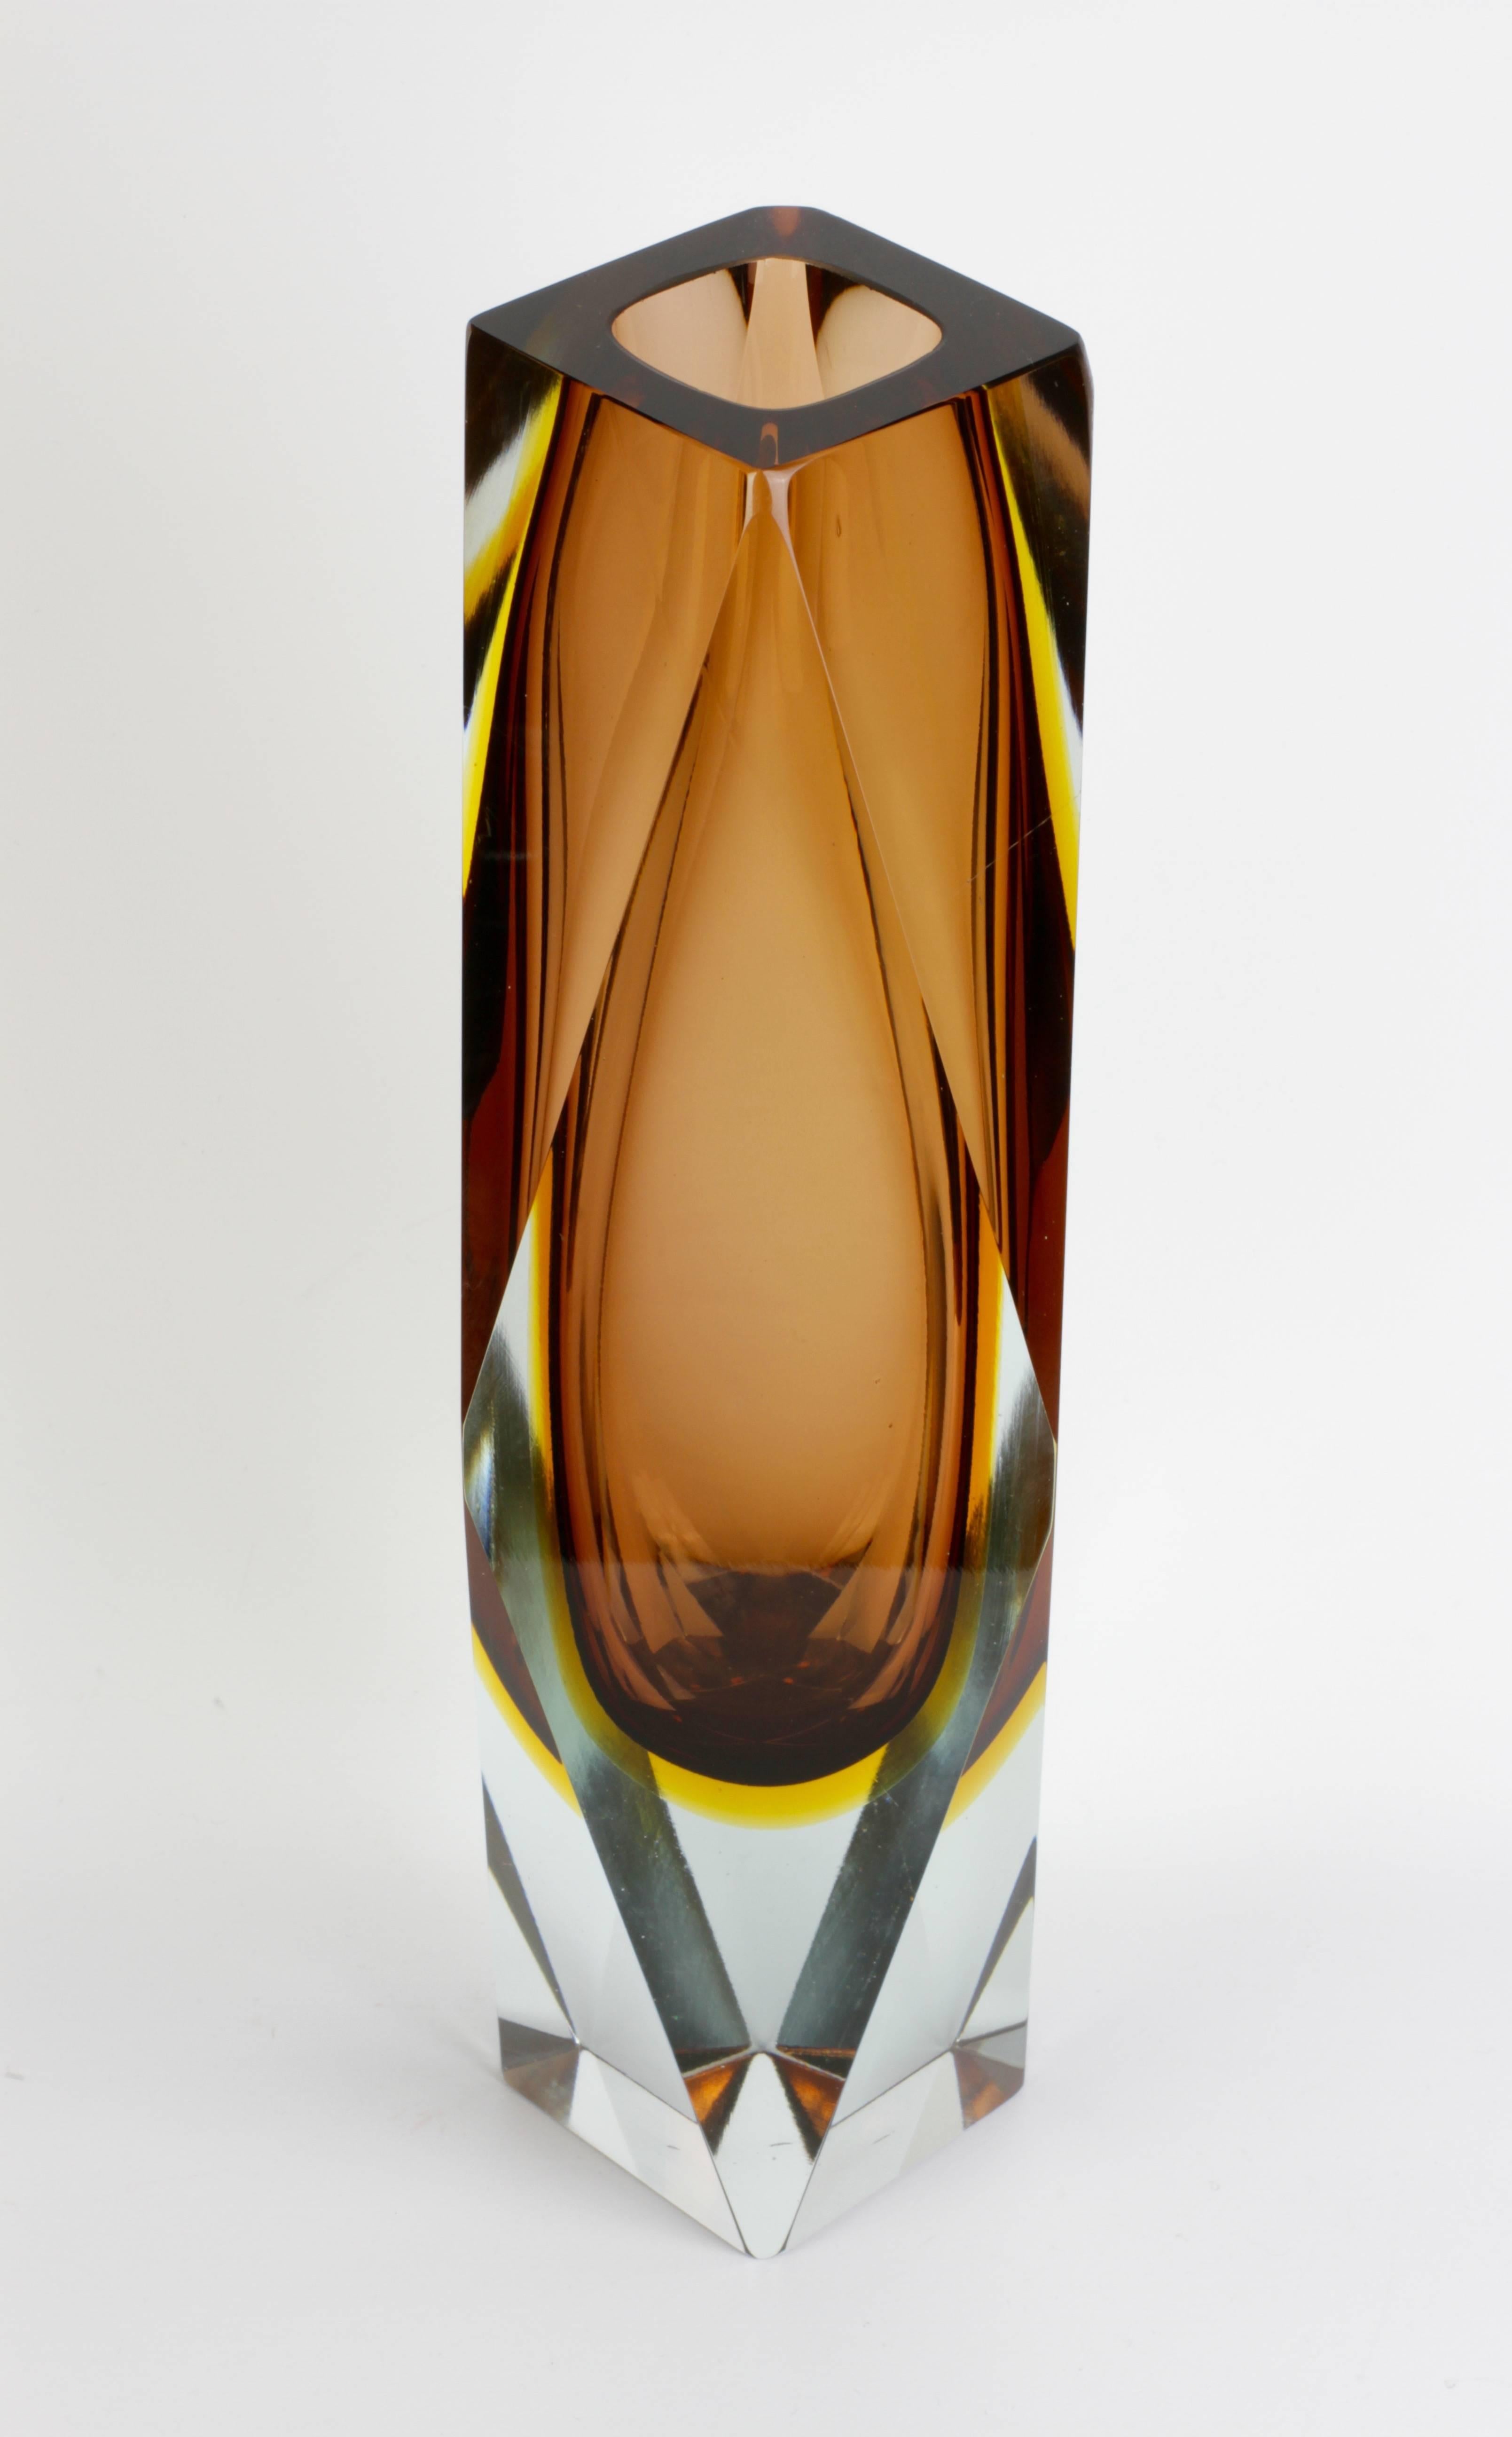 Ce vase en verre de Murano de taille monumentale, datant du milieu du siècle dernier, a été réalisé entre 1960 et 1980. Exceptionnel à tous égards, il vous impose d'admirer sa conception étonnante et sa production magistrale. Facetté sur quatre